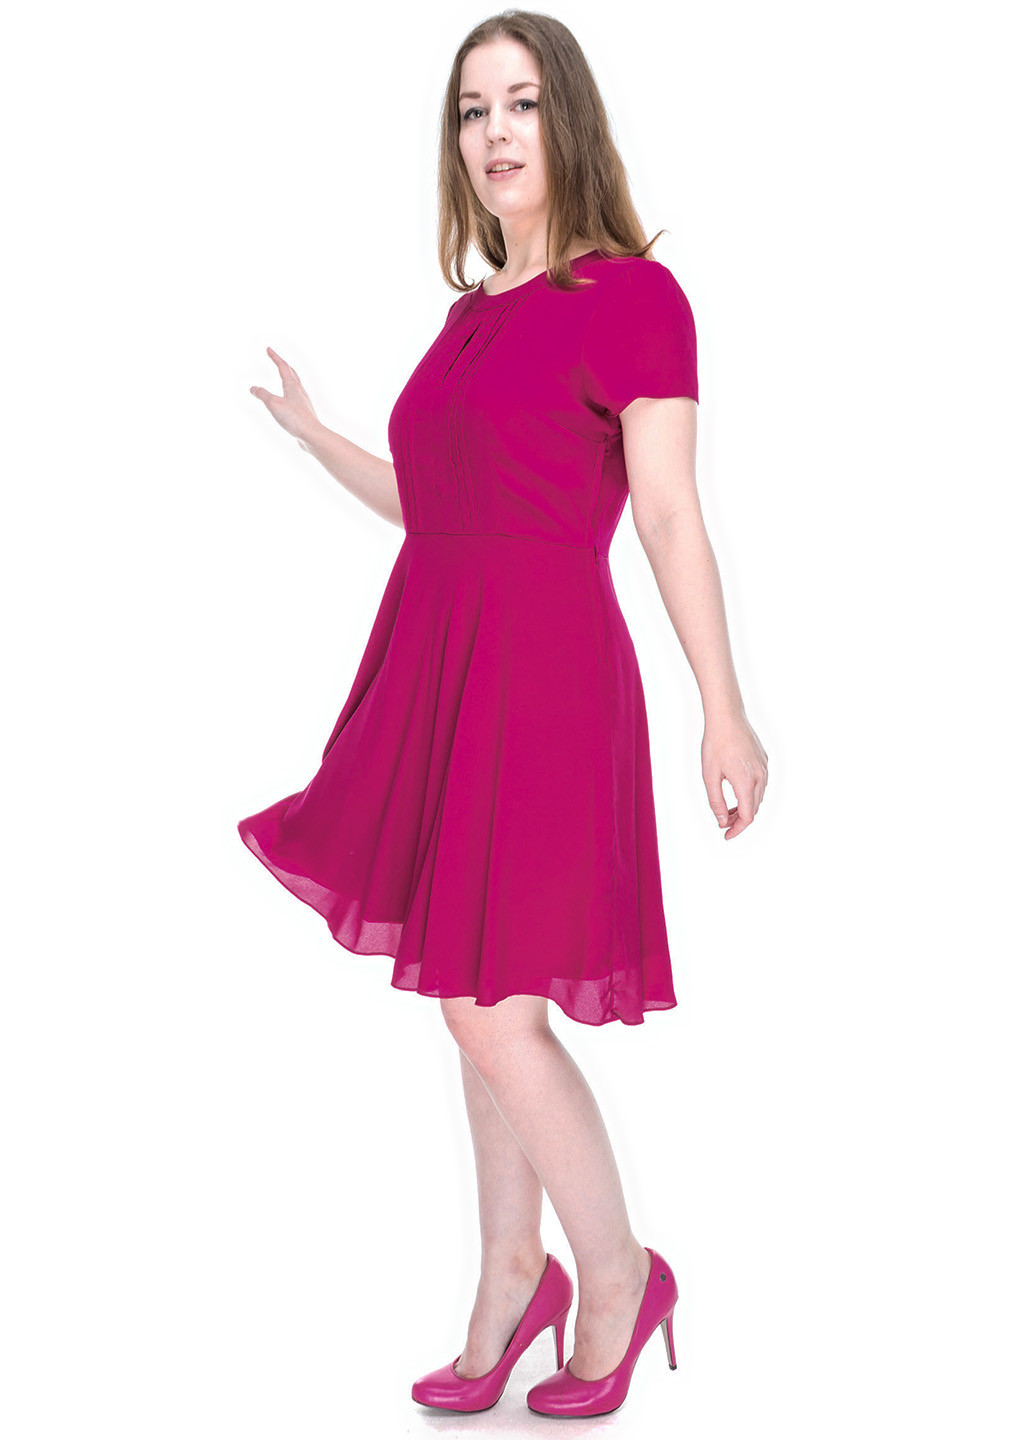 Фуксинова (кольору Фукія) коктейльна платье коротка Dorothy Perkins однотонна